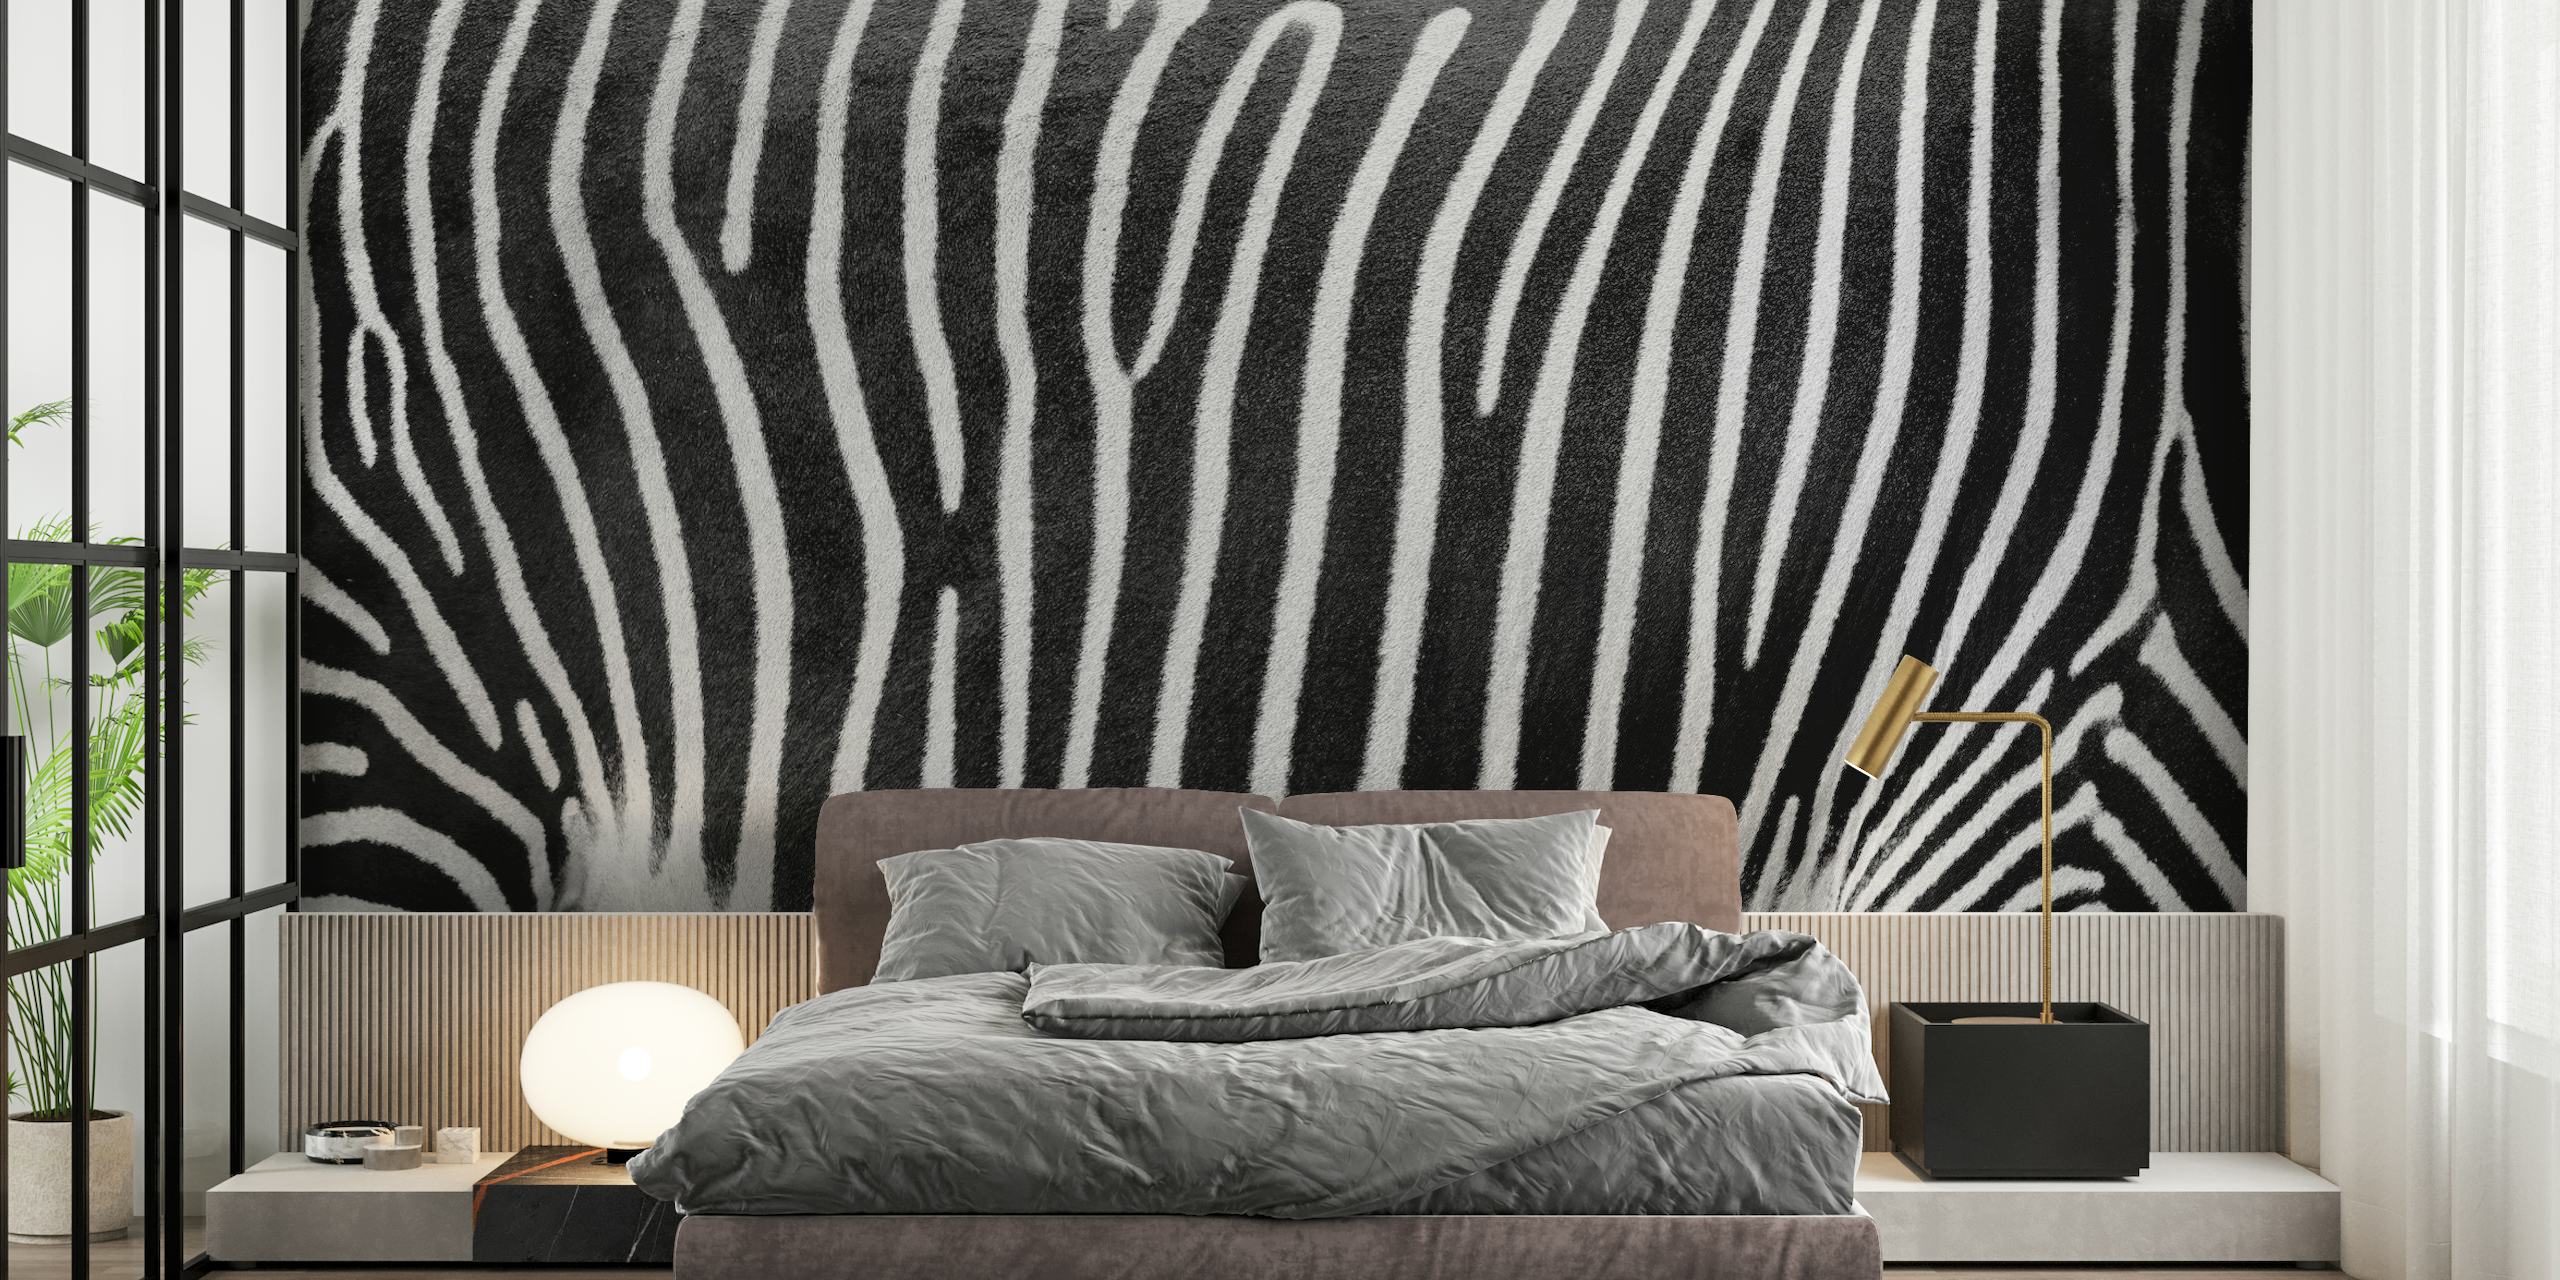 Zebra stripe pattern wall mural for modern home decor